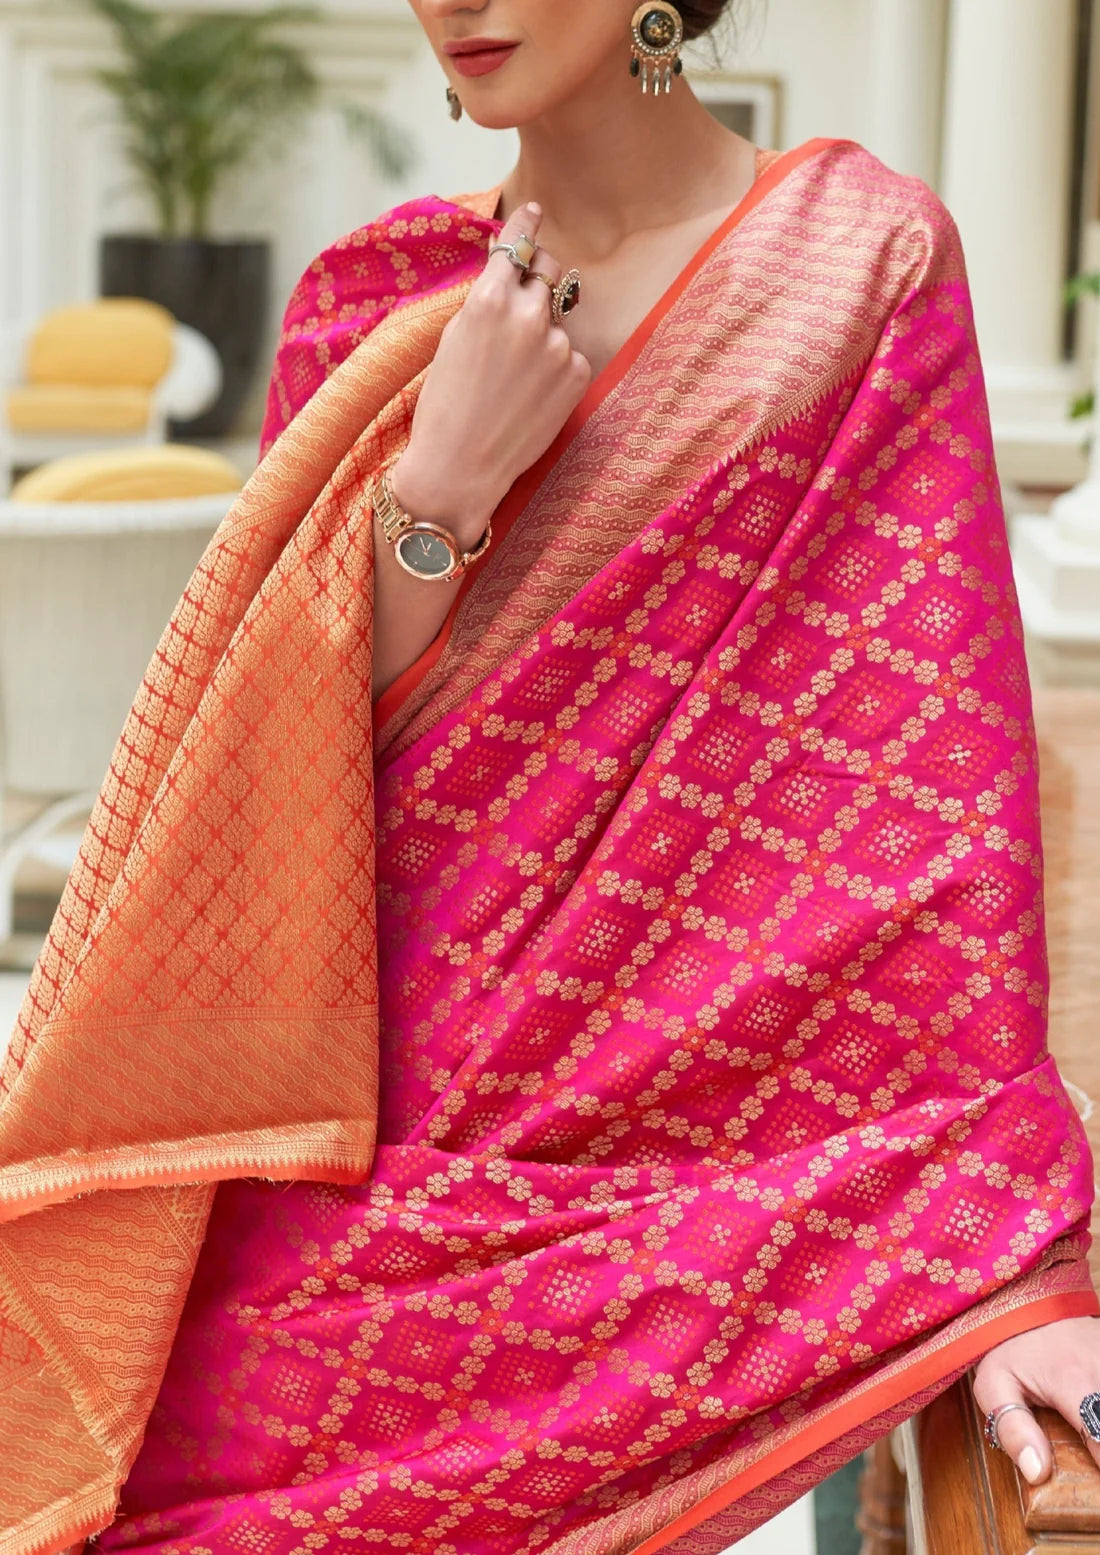 Banarasi silk hot pink bandhani bridal saree design online shopping with price.